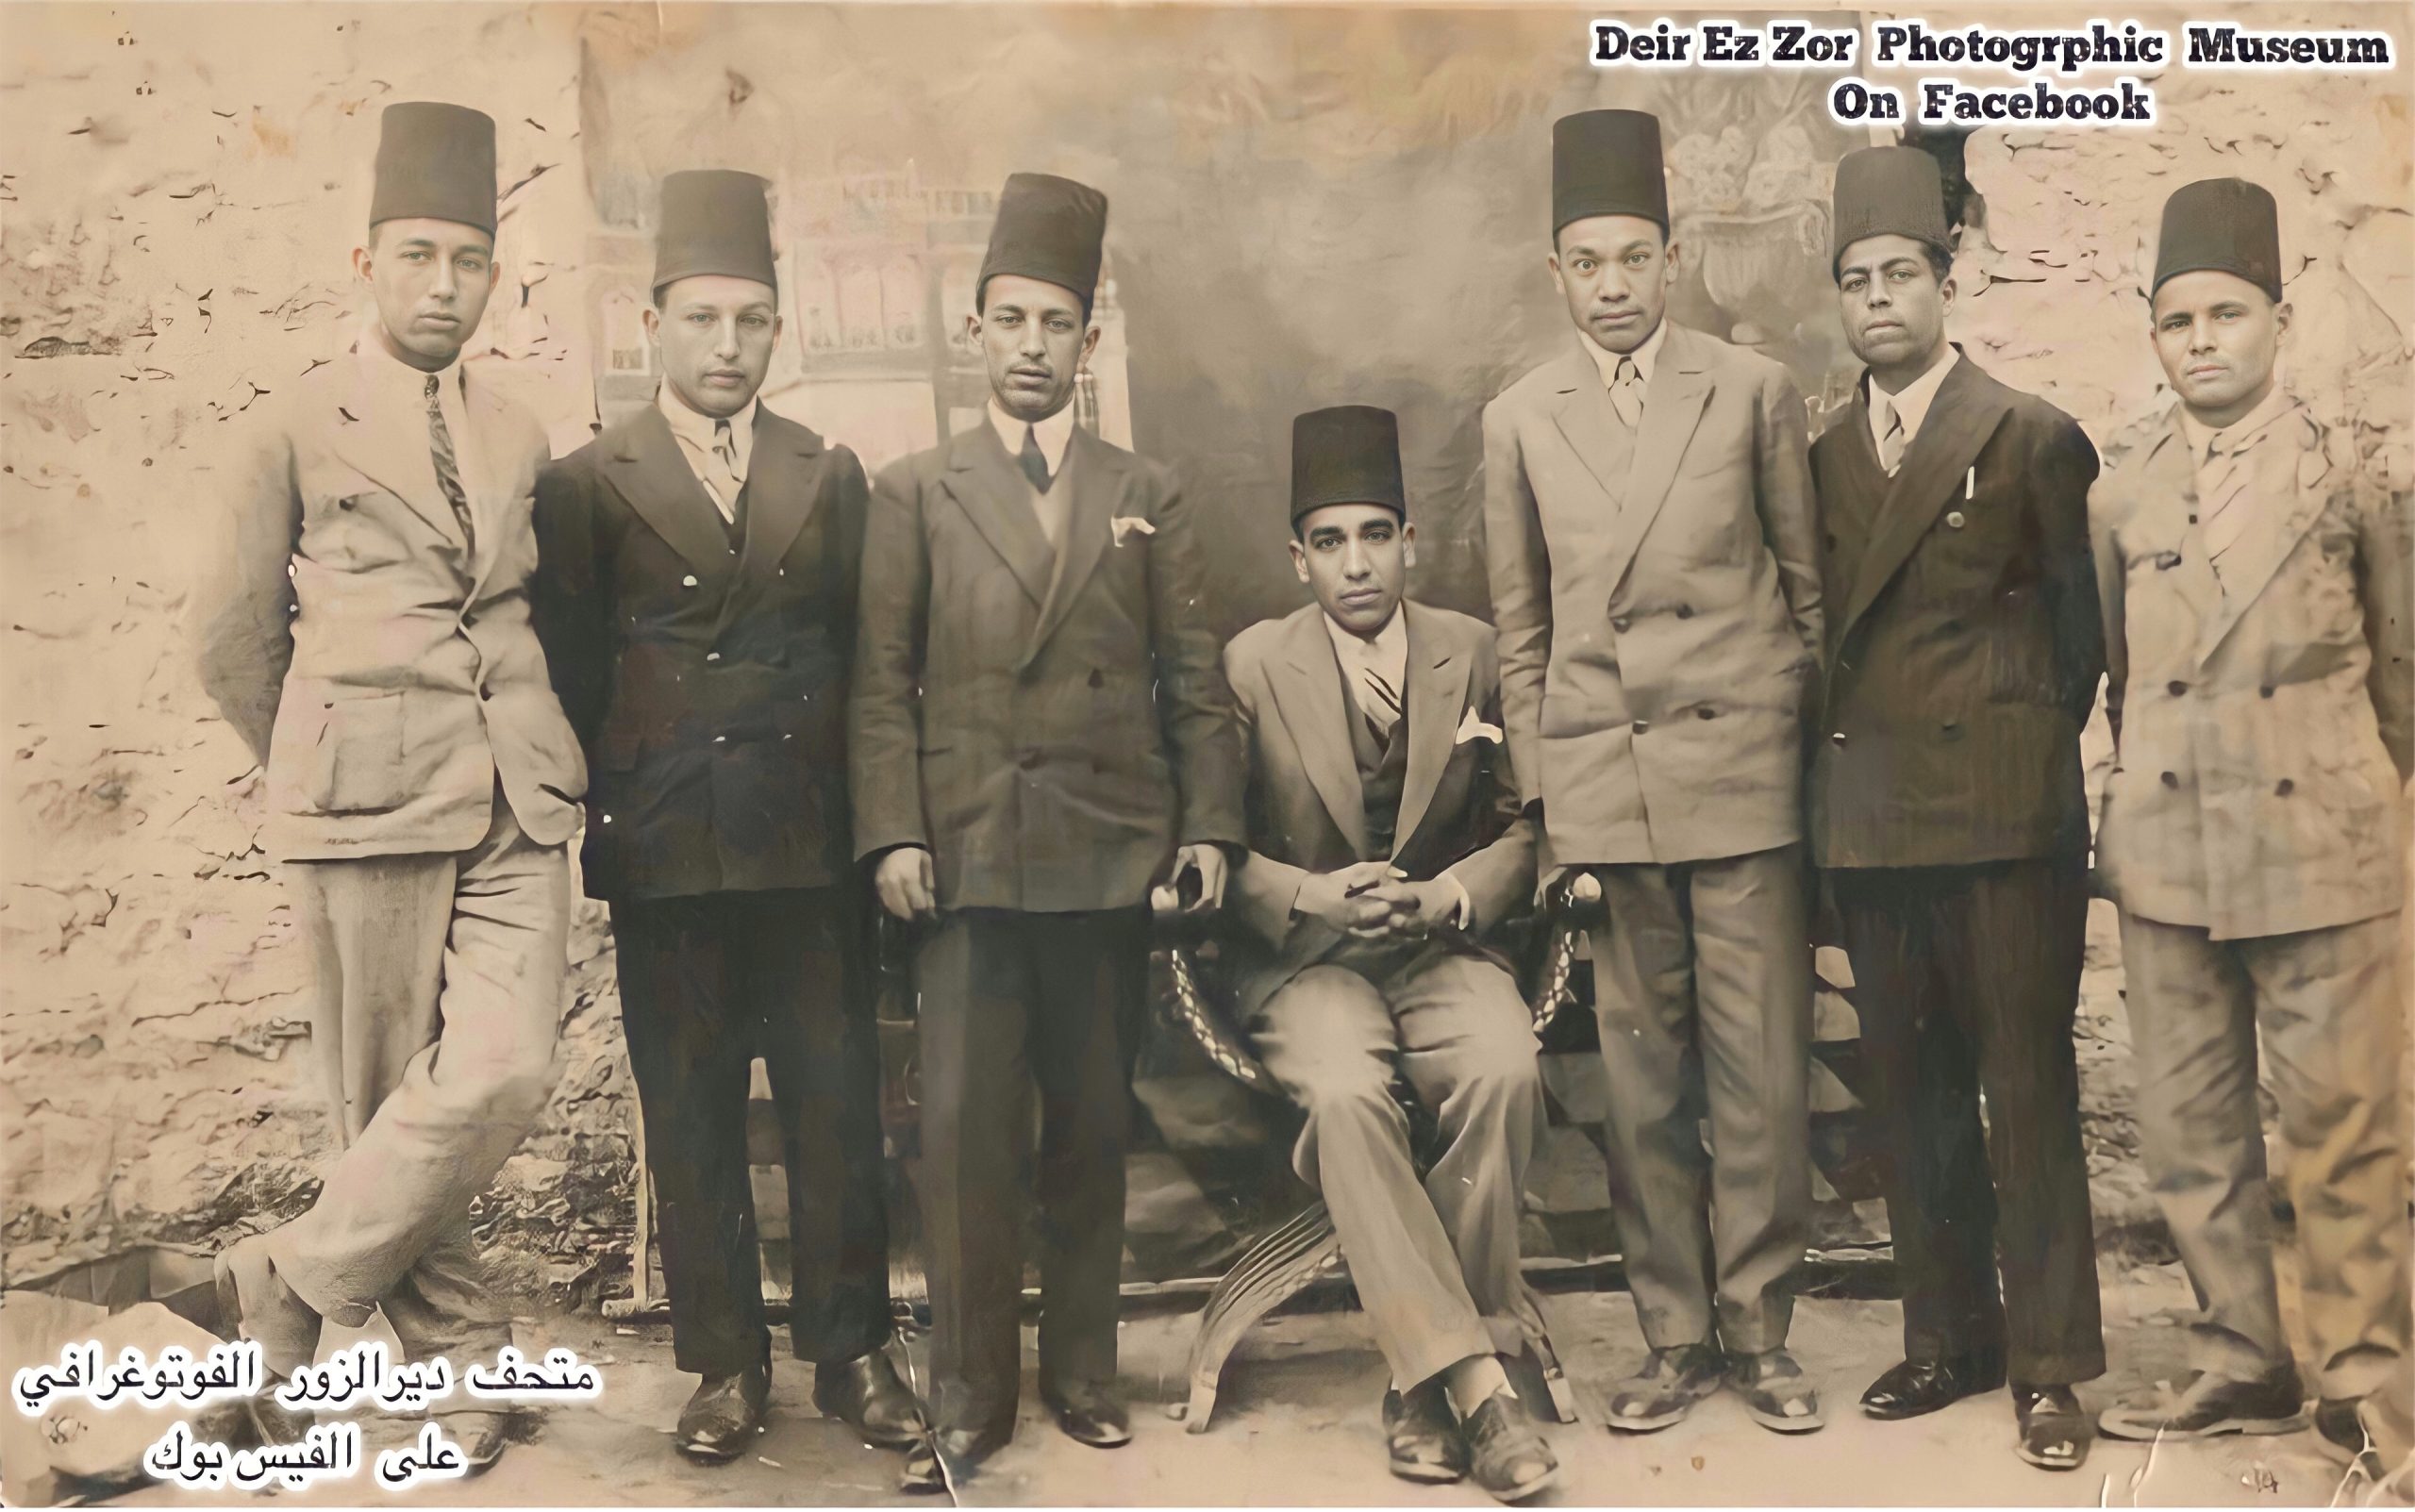 التاريخ السوري المعاصر - مجموعة من شباب دير الزور في دمشق في عشرينيات القرن العشرين